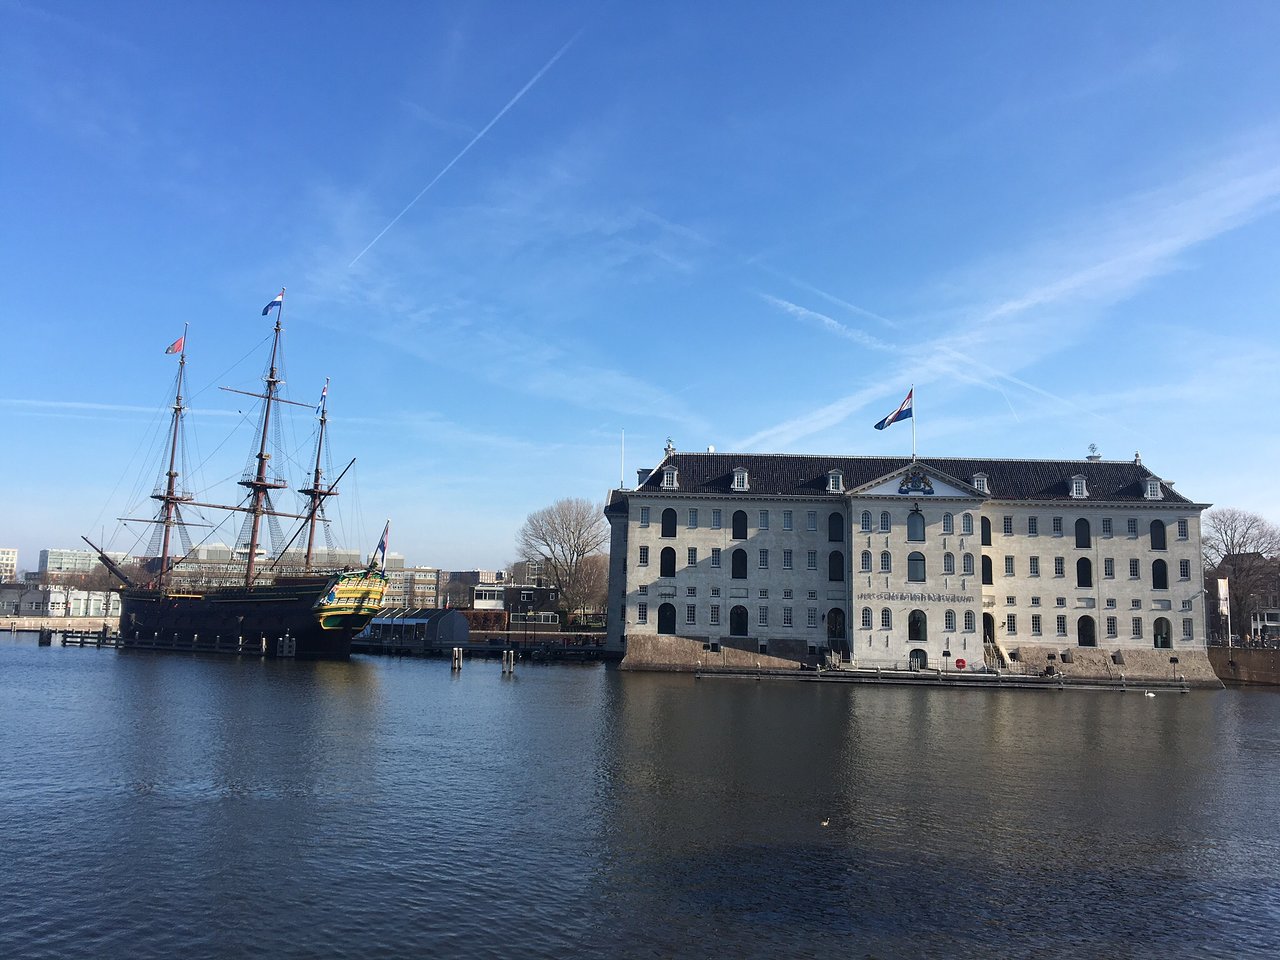 أبرز الأماكن السياحة والترفيهية في أمستردام